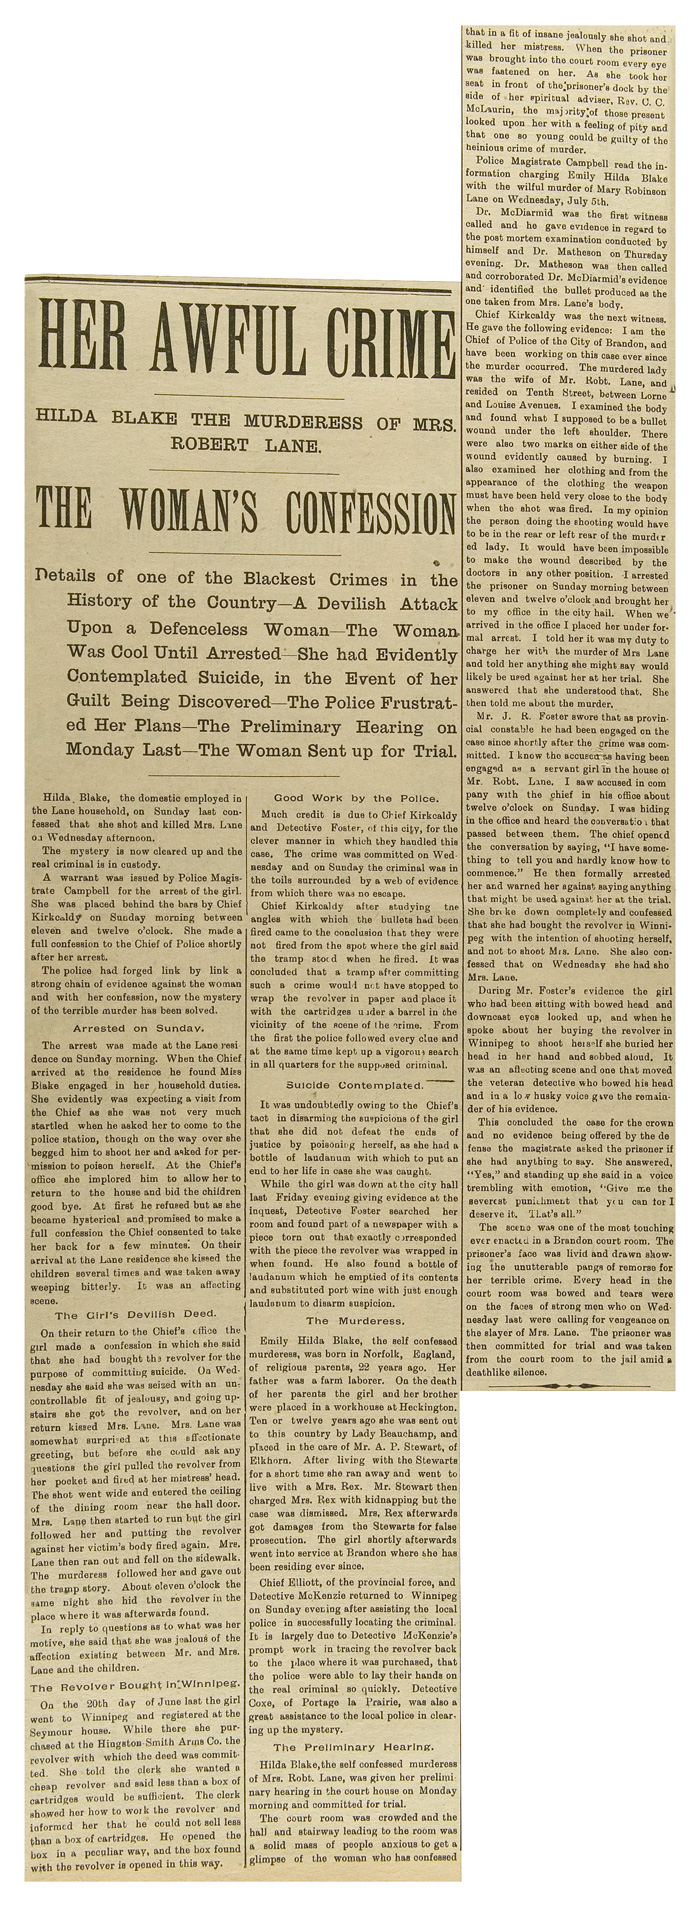 Article du Brandon Times, 13 juillet 1899